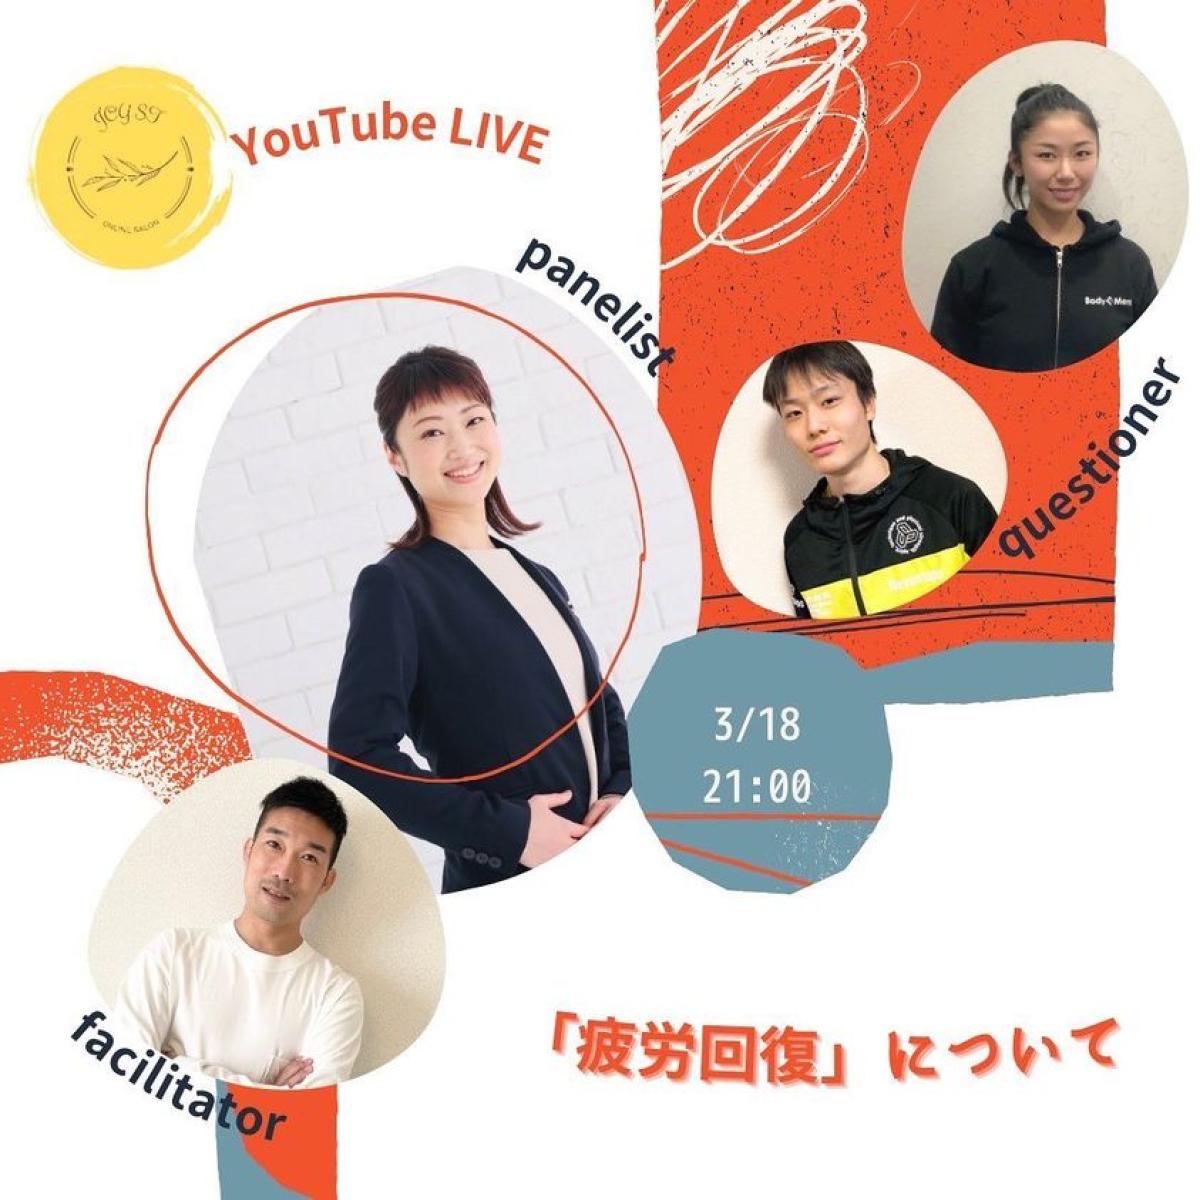 3月18日に袴田雅江さんがYouTube Liveにゲスト出演されます！【栄養コンシェルジュ取得後のご活躍】